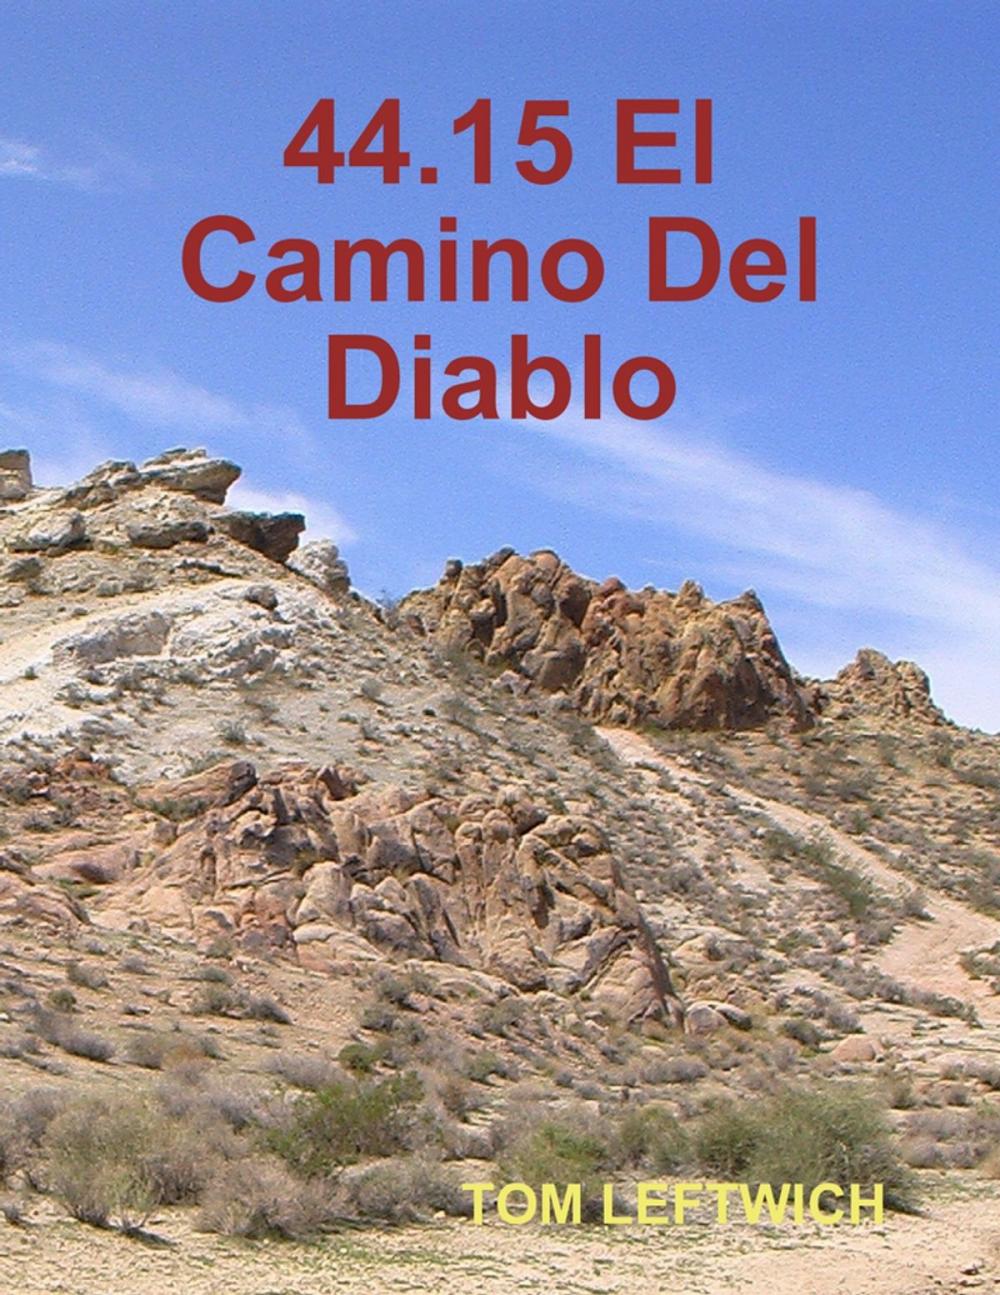 Big bigCover of 44.15 El Camino Del Diablo